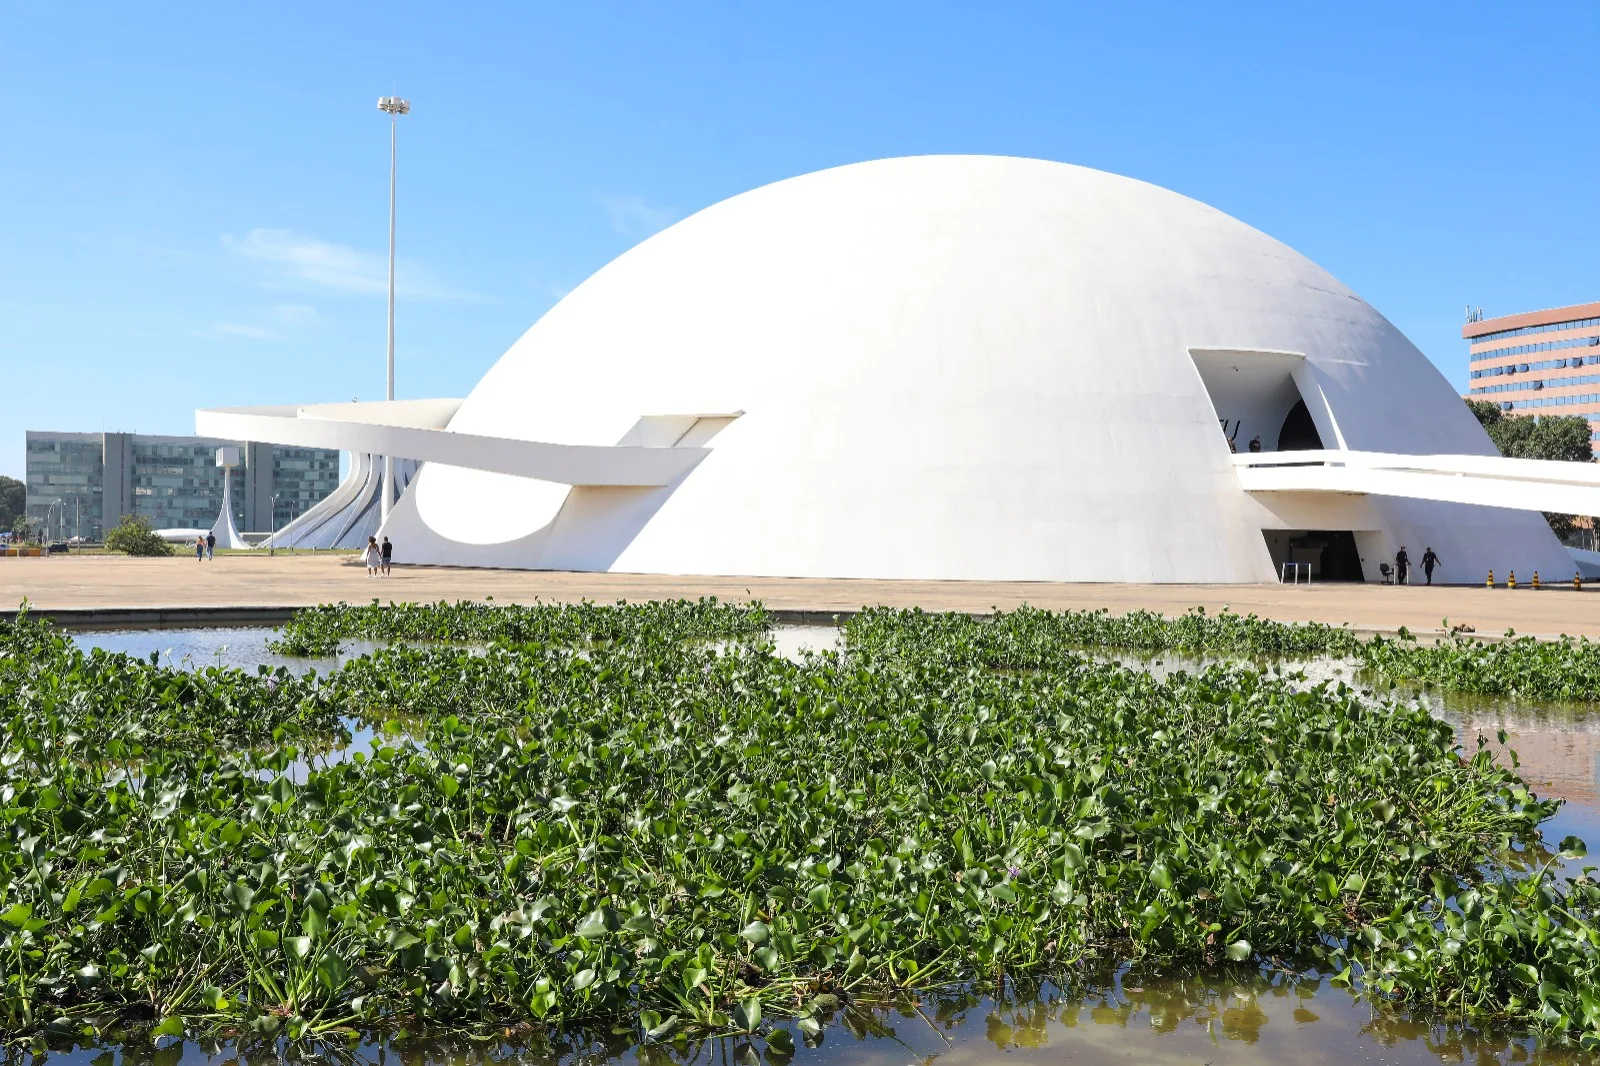 Museu Nacional promove exposição de jardim flutuante nos espelhos d'água -  Agita Brasília